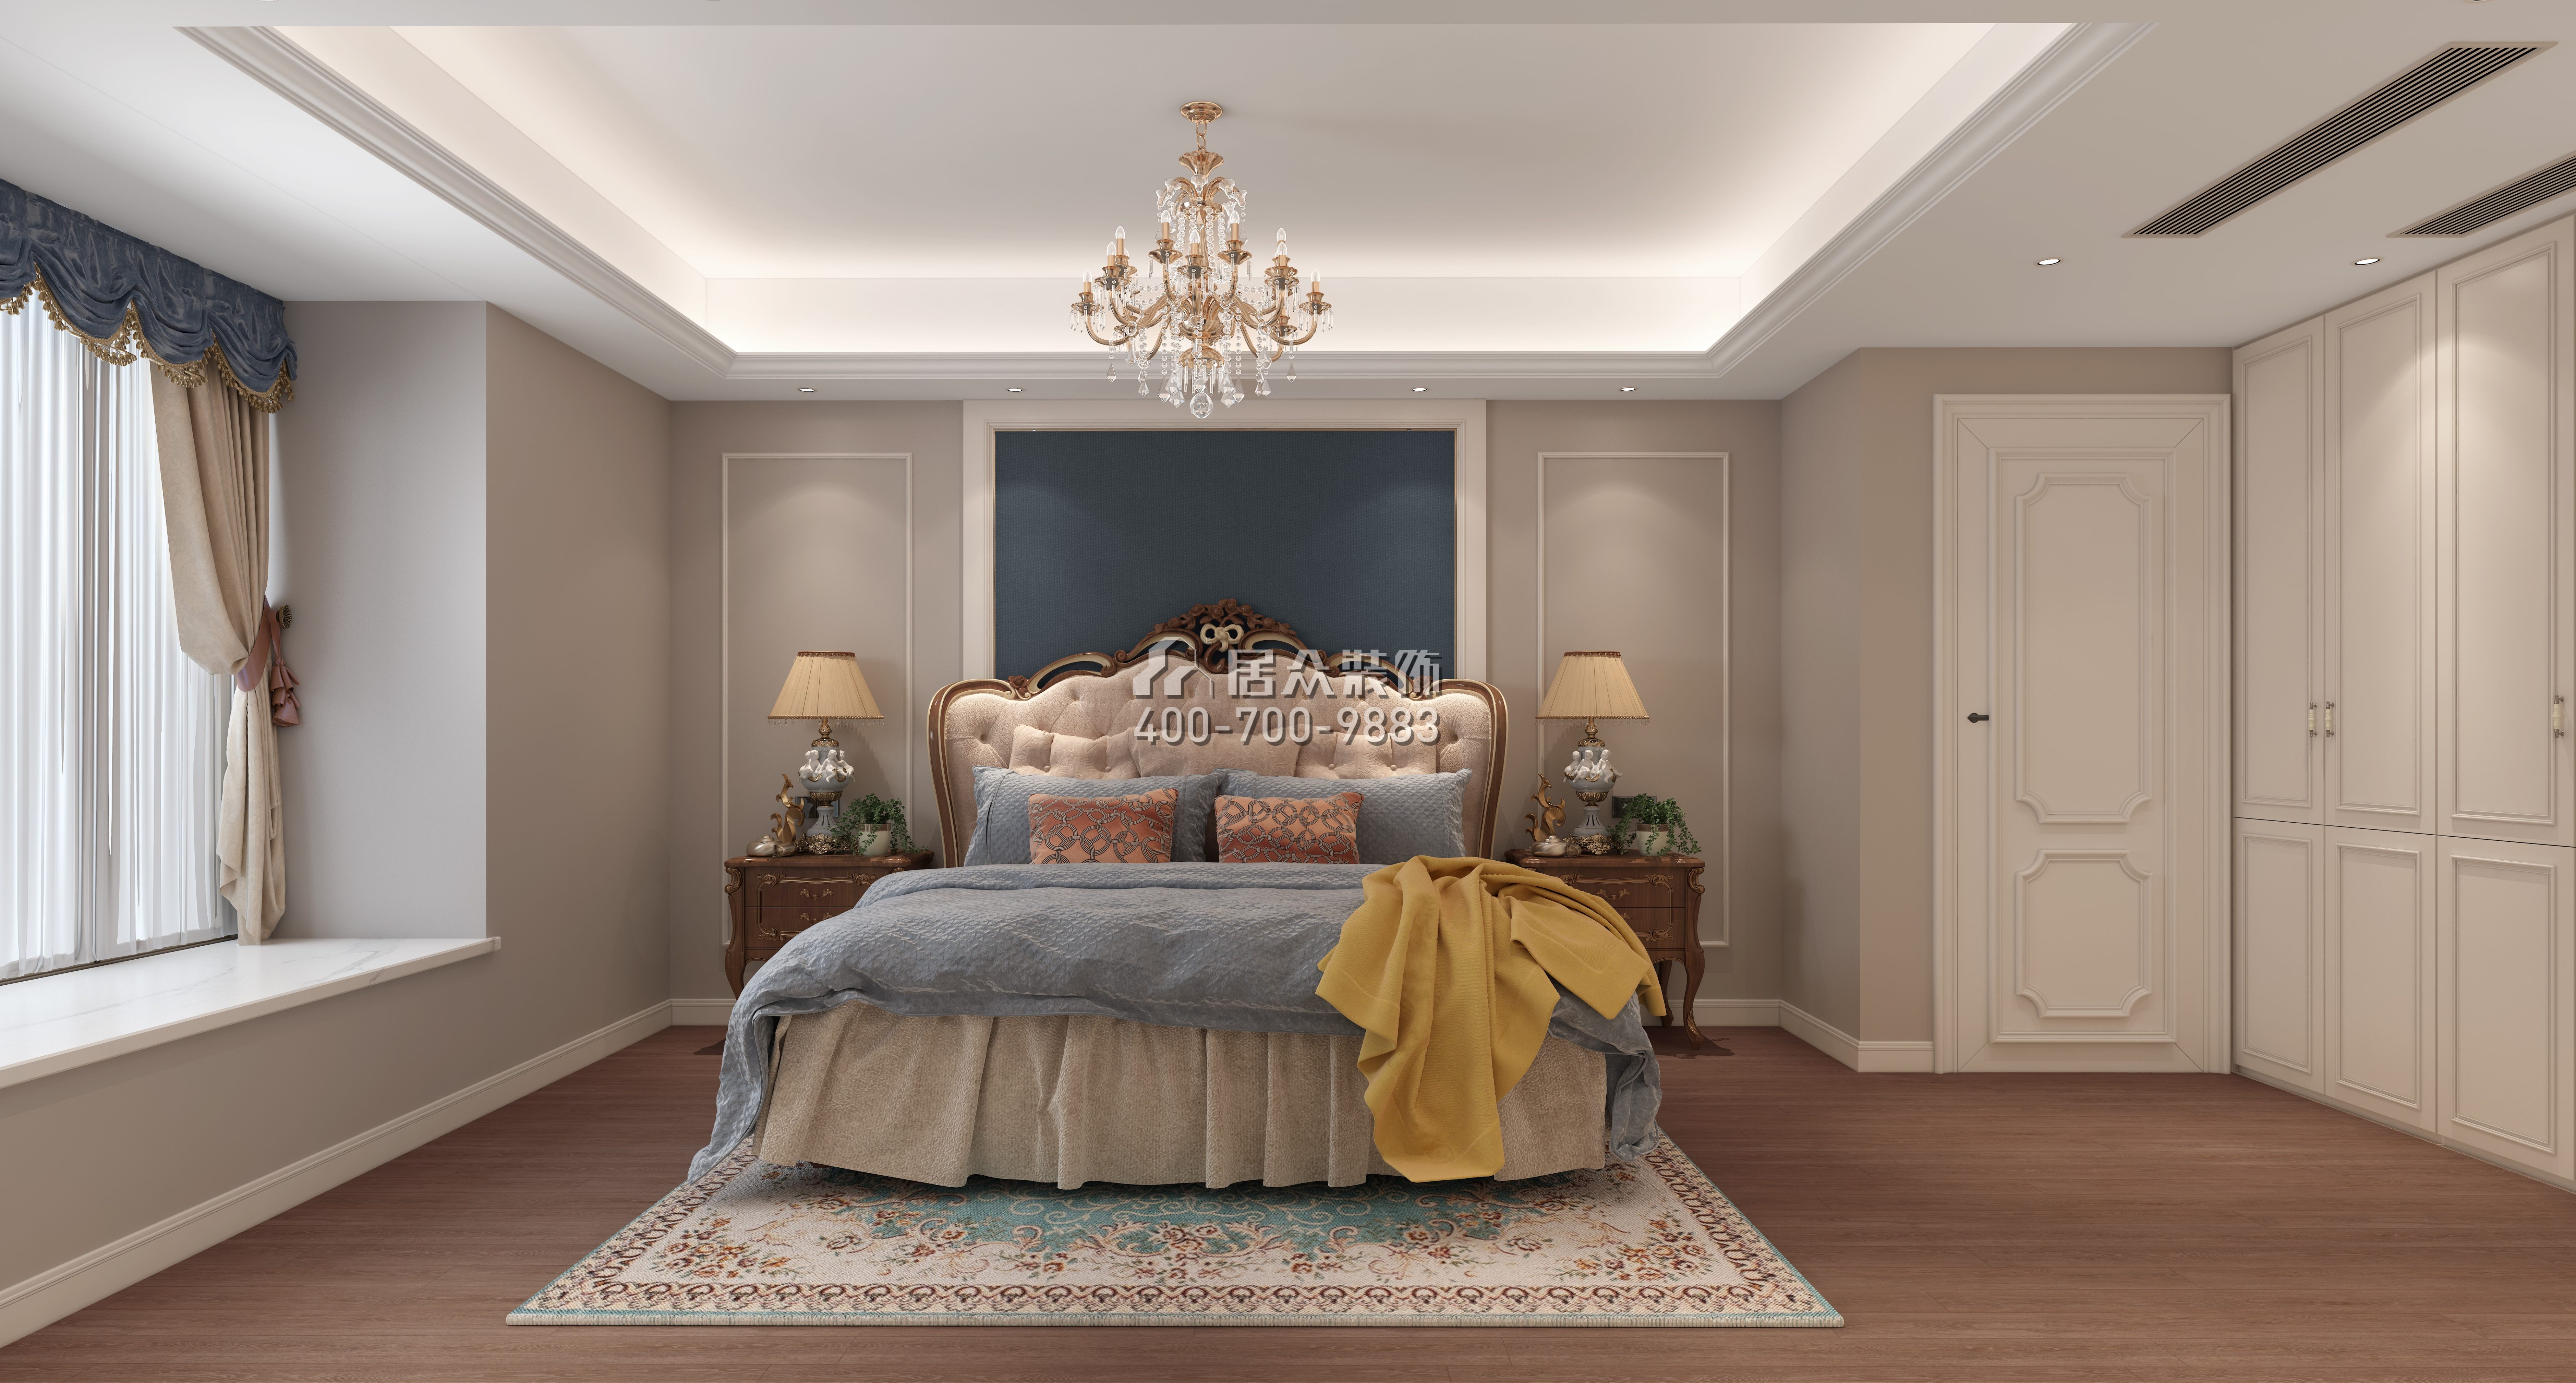 金水灣198平方米歐式風格平層戶型臥室裝修效果圖